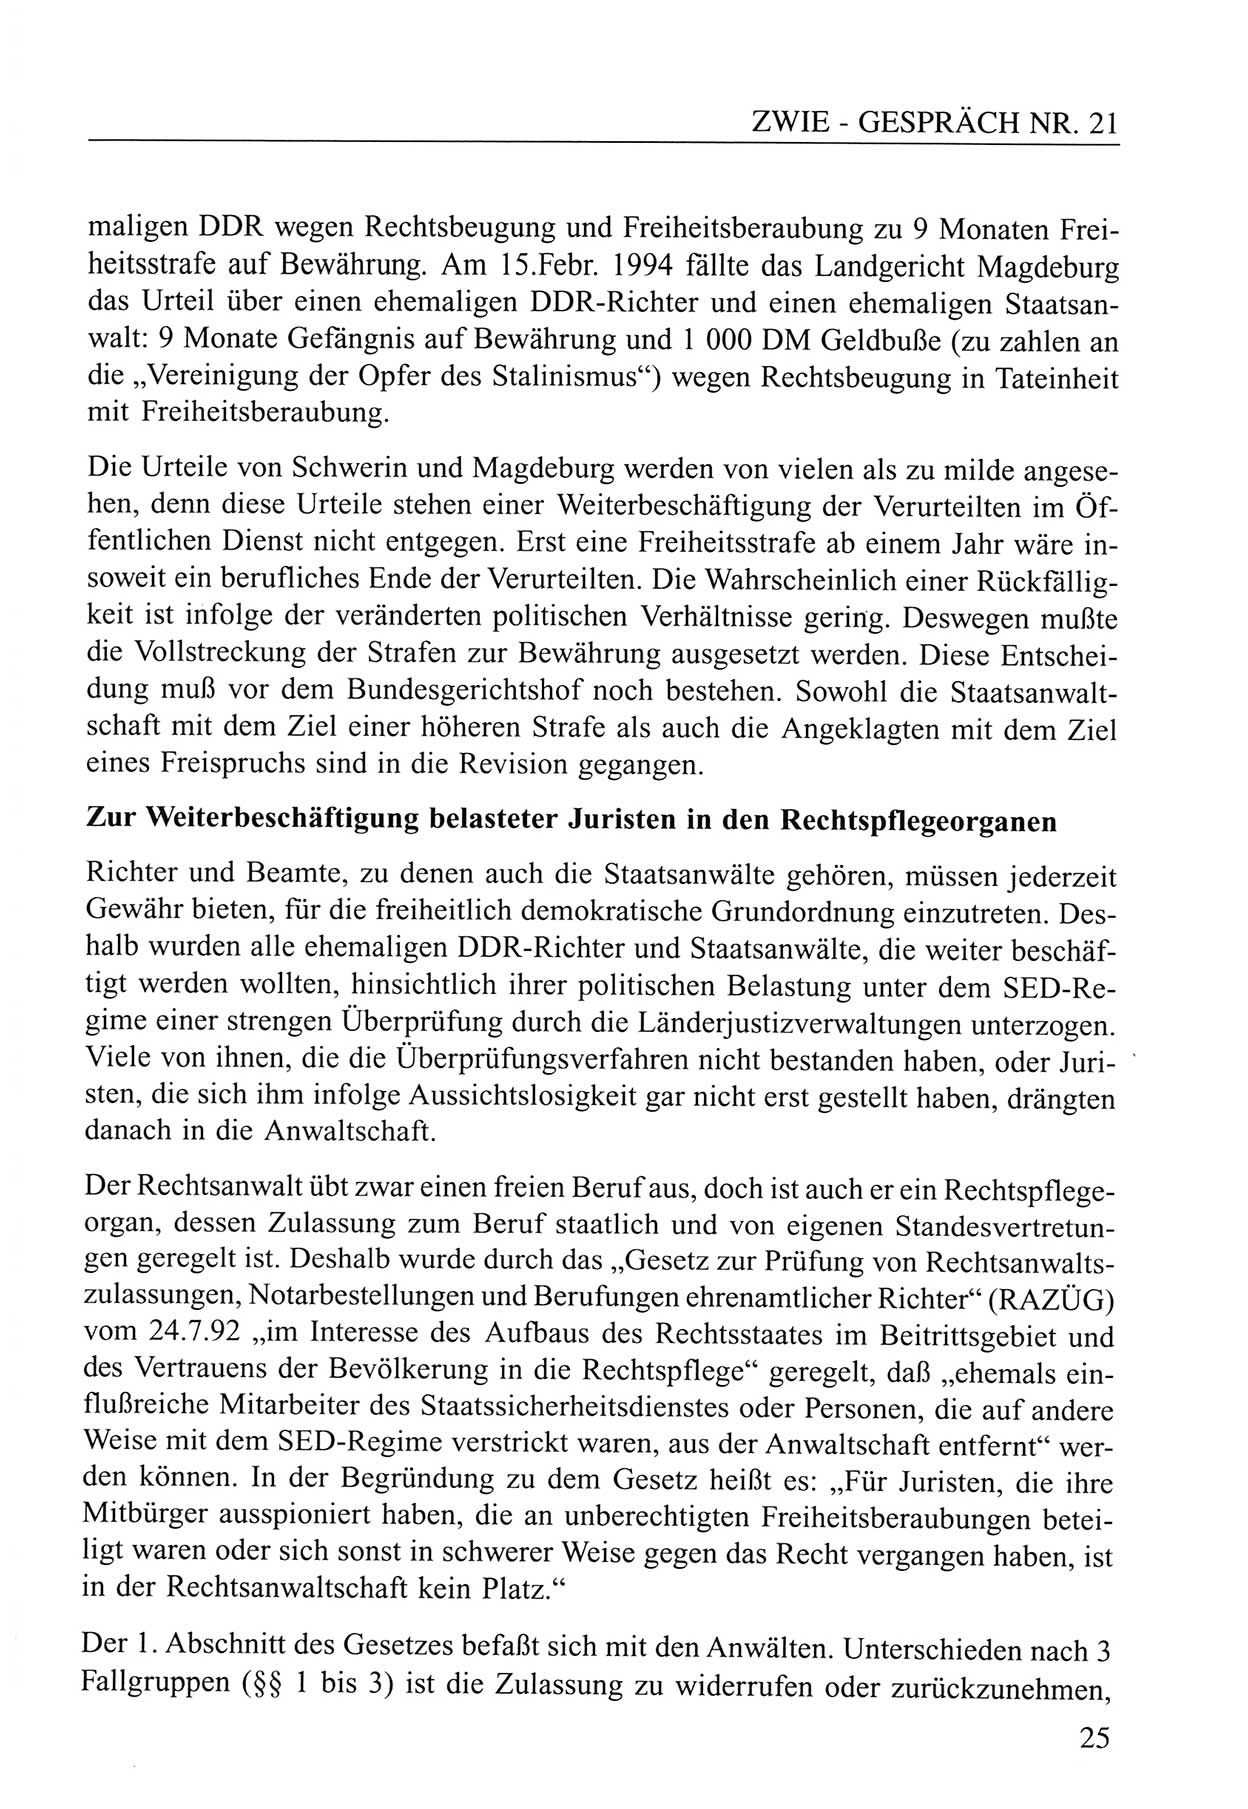 Zwie-Gespräch, Beiträge zum Umgang mit der Staatssicherheits-Vergangenheit [Deutsche Demokratische Republik (DDR)], Ausgabe Nr. 21, Berlin 1994, Seite 25 (Zwie-Gespr. Ausg. 21 1994, S. 25)